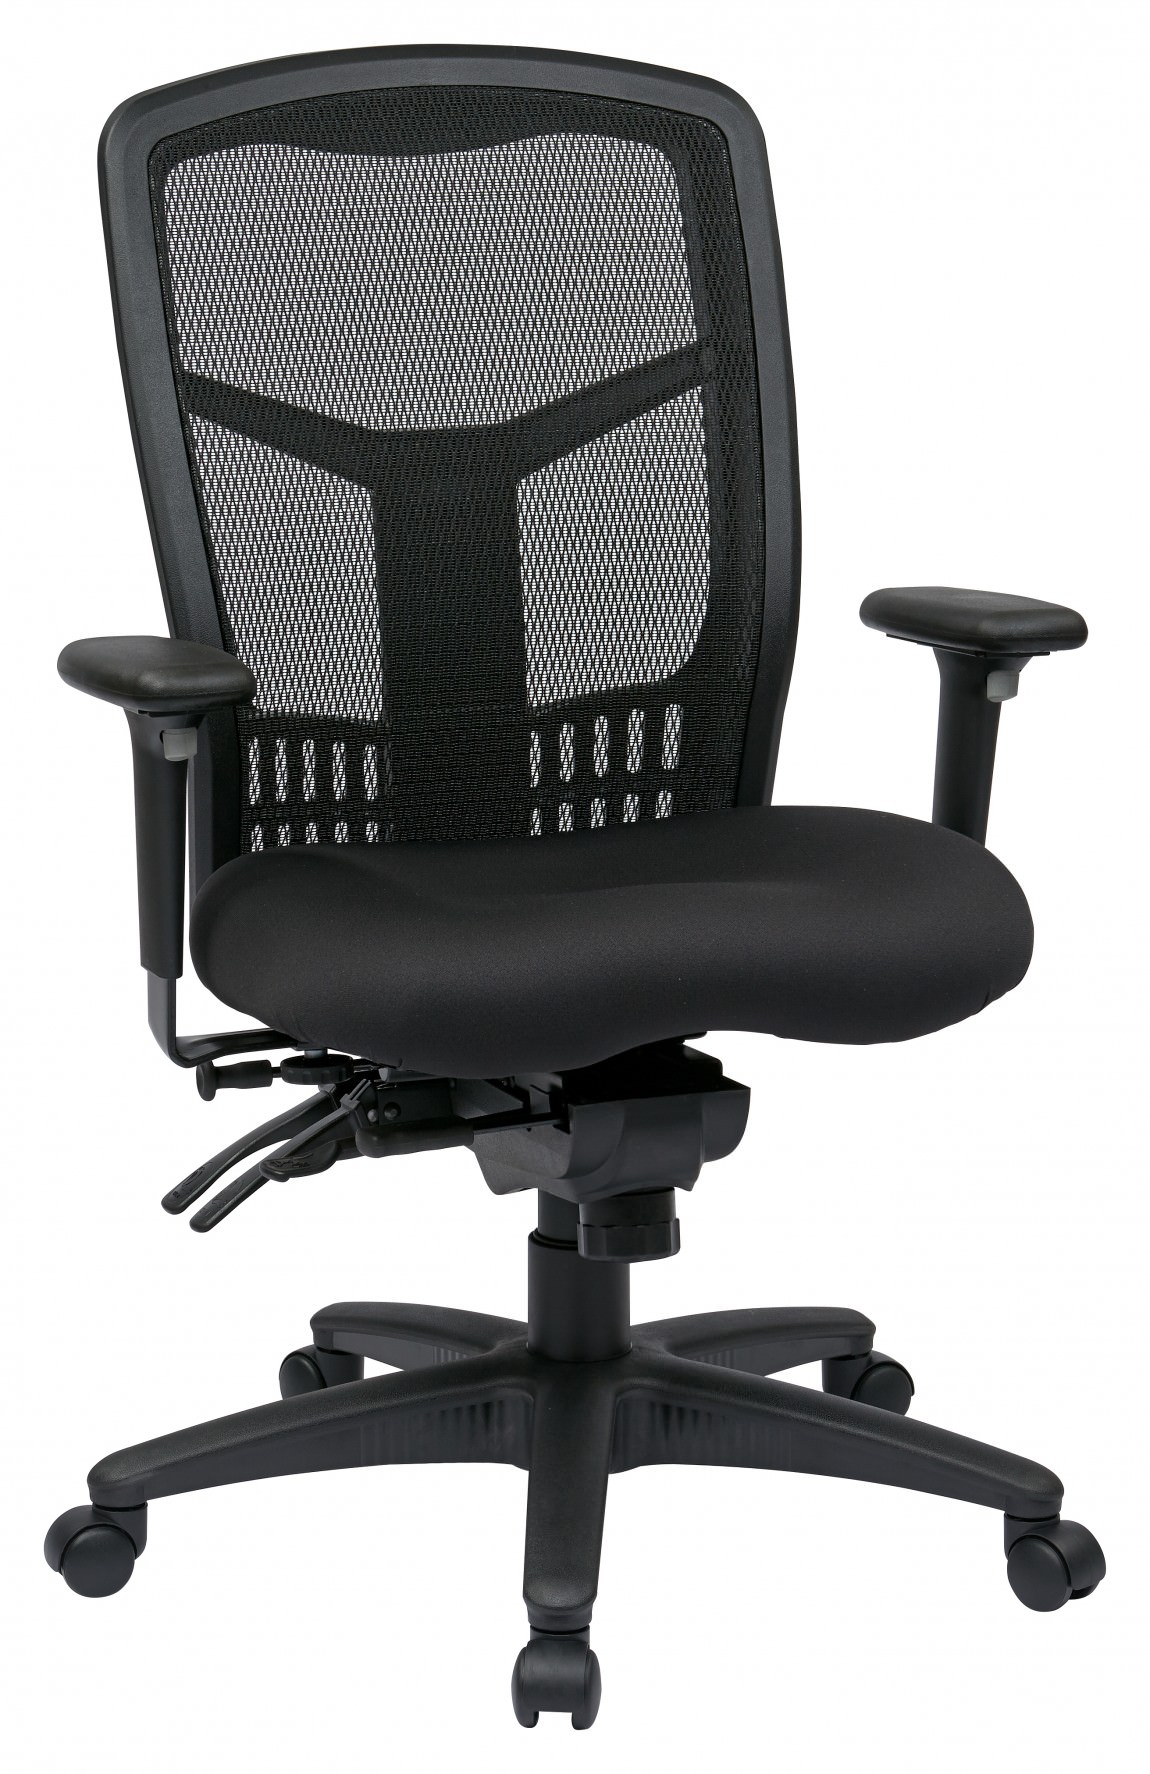 Black Mesh Back Task Chair 25.25 x 23.5 x 38.25-41 : EM91027-3